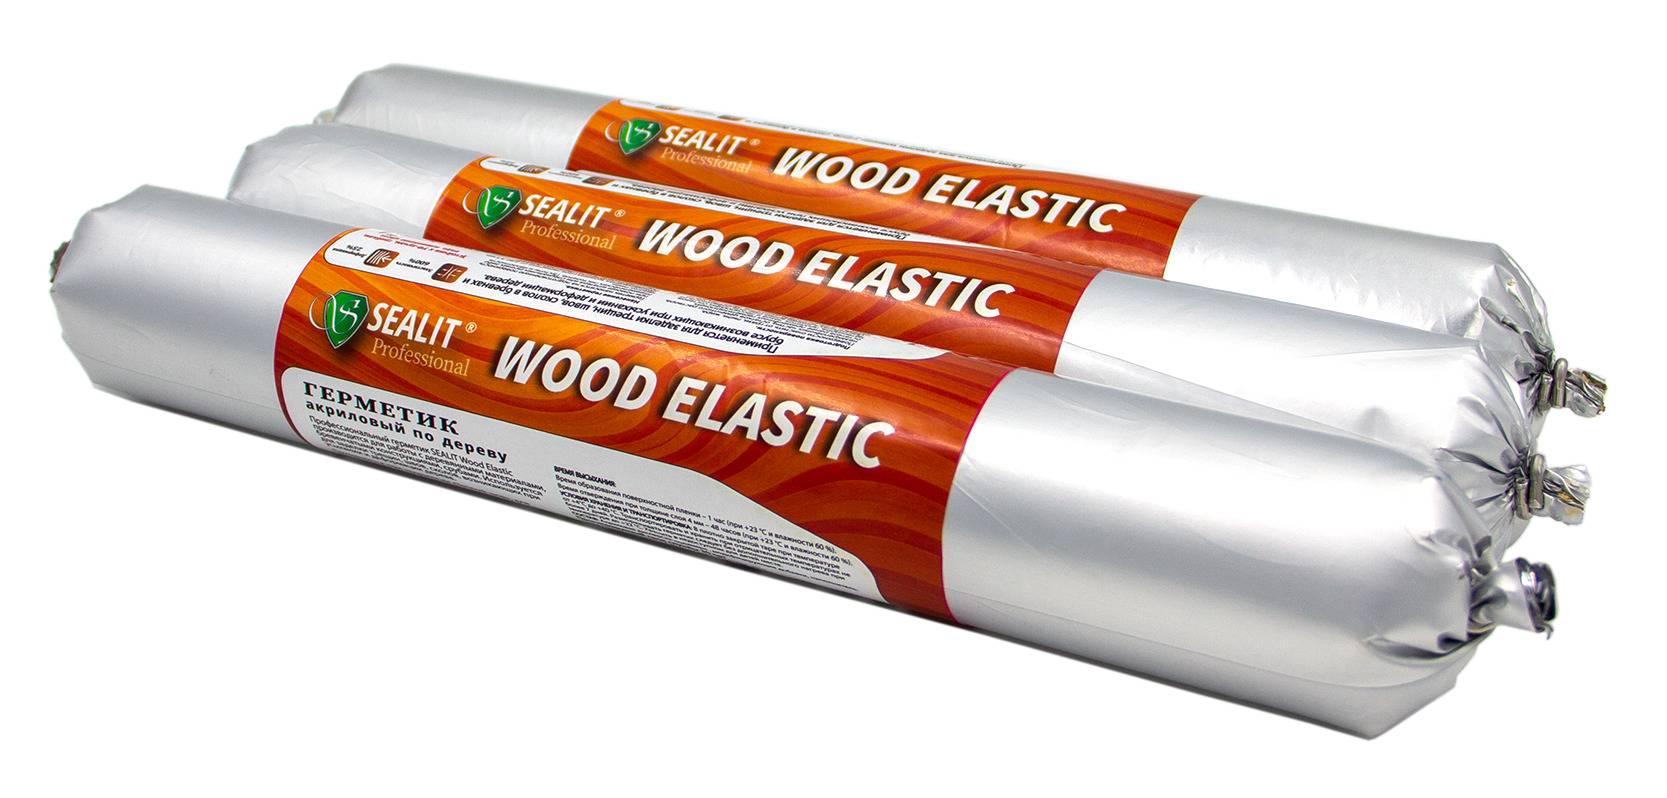 Герметик для дерева акриловый Sealit Wood Elastic, 900 гр, Бук герметик для дерева акриловый sealit wood elastic 900 гр палисандр